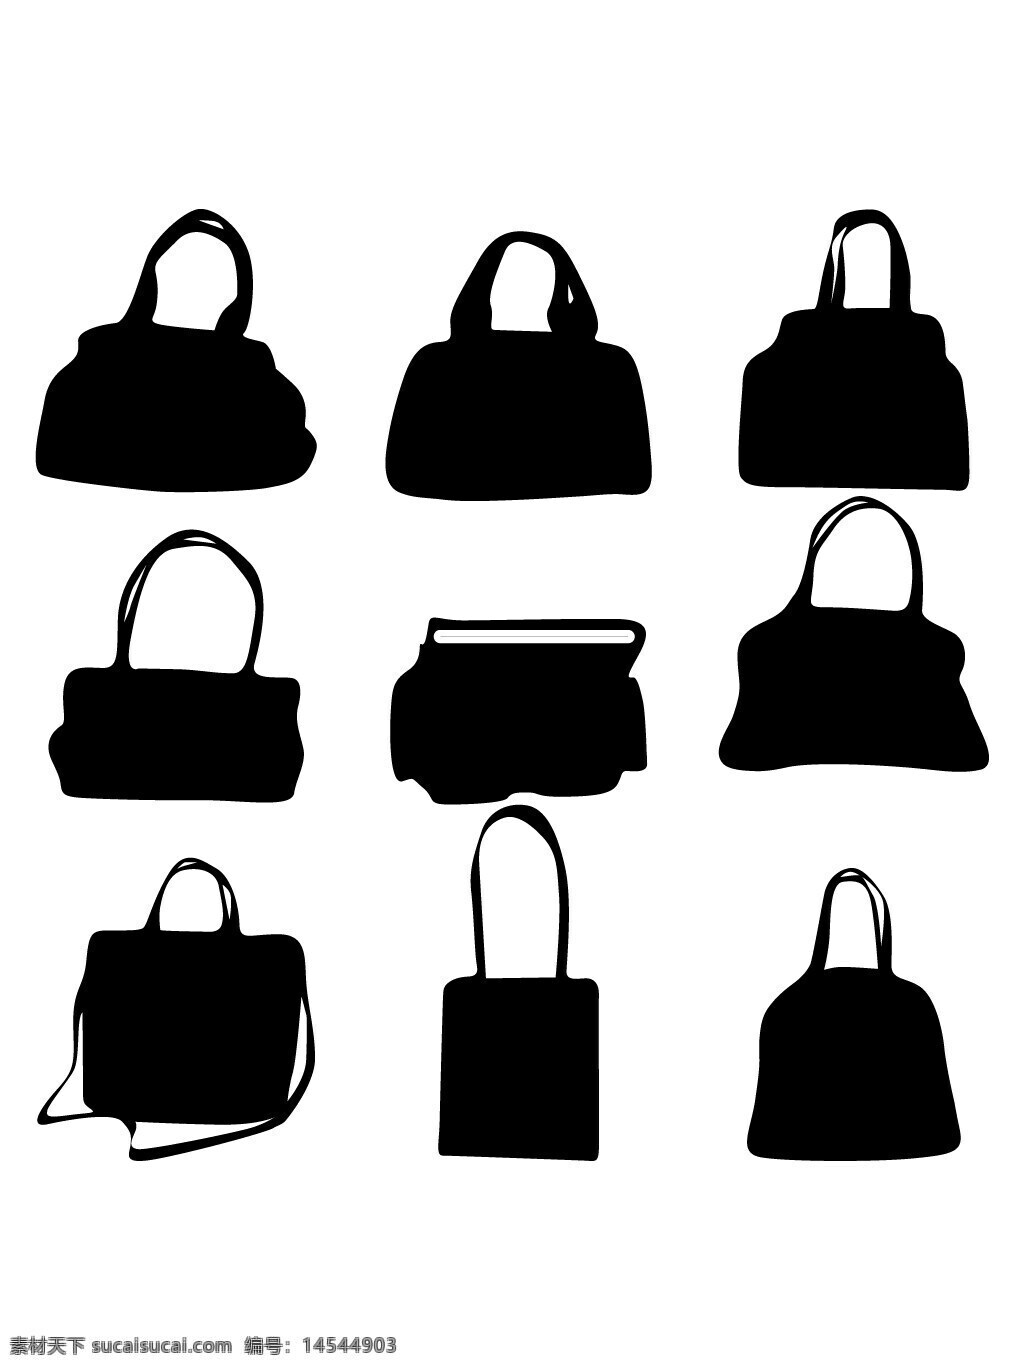 包 书包 皮包 挎包 背包 单肩包 名牌包 布包 袋子 布袋 矢量素材 免扣素材